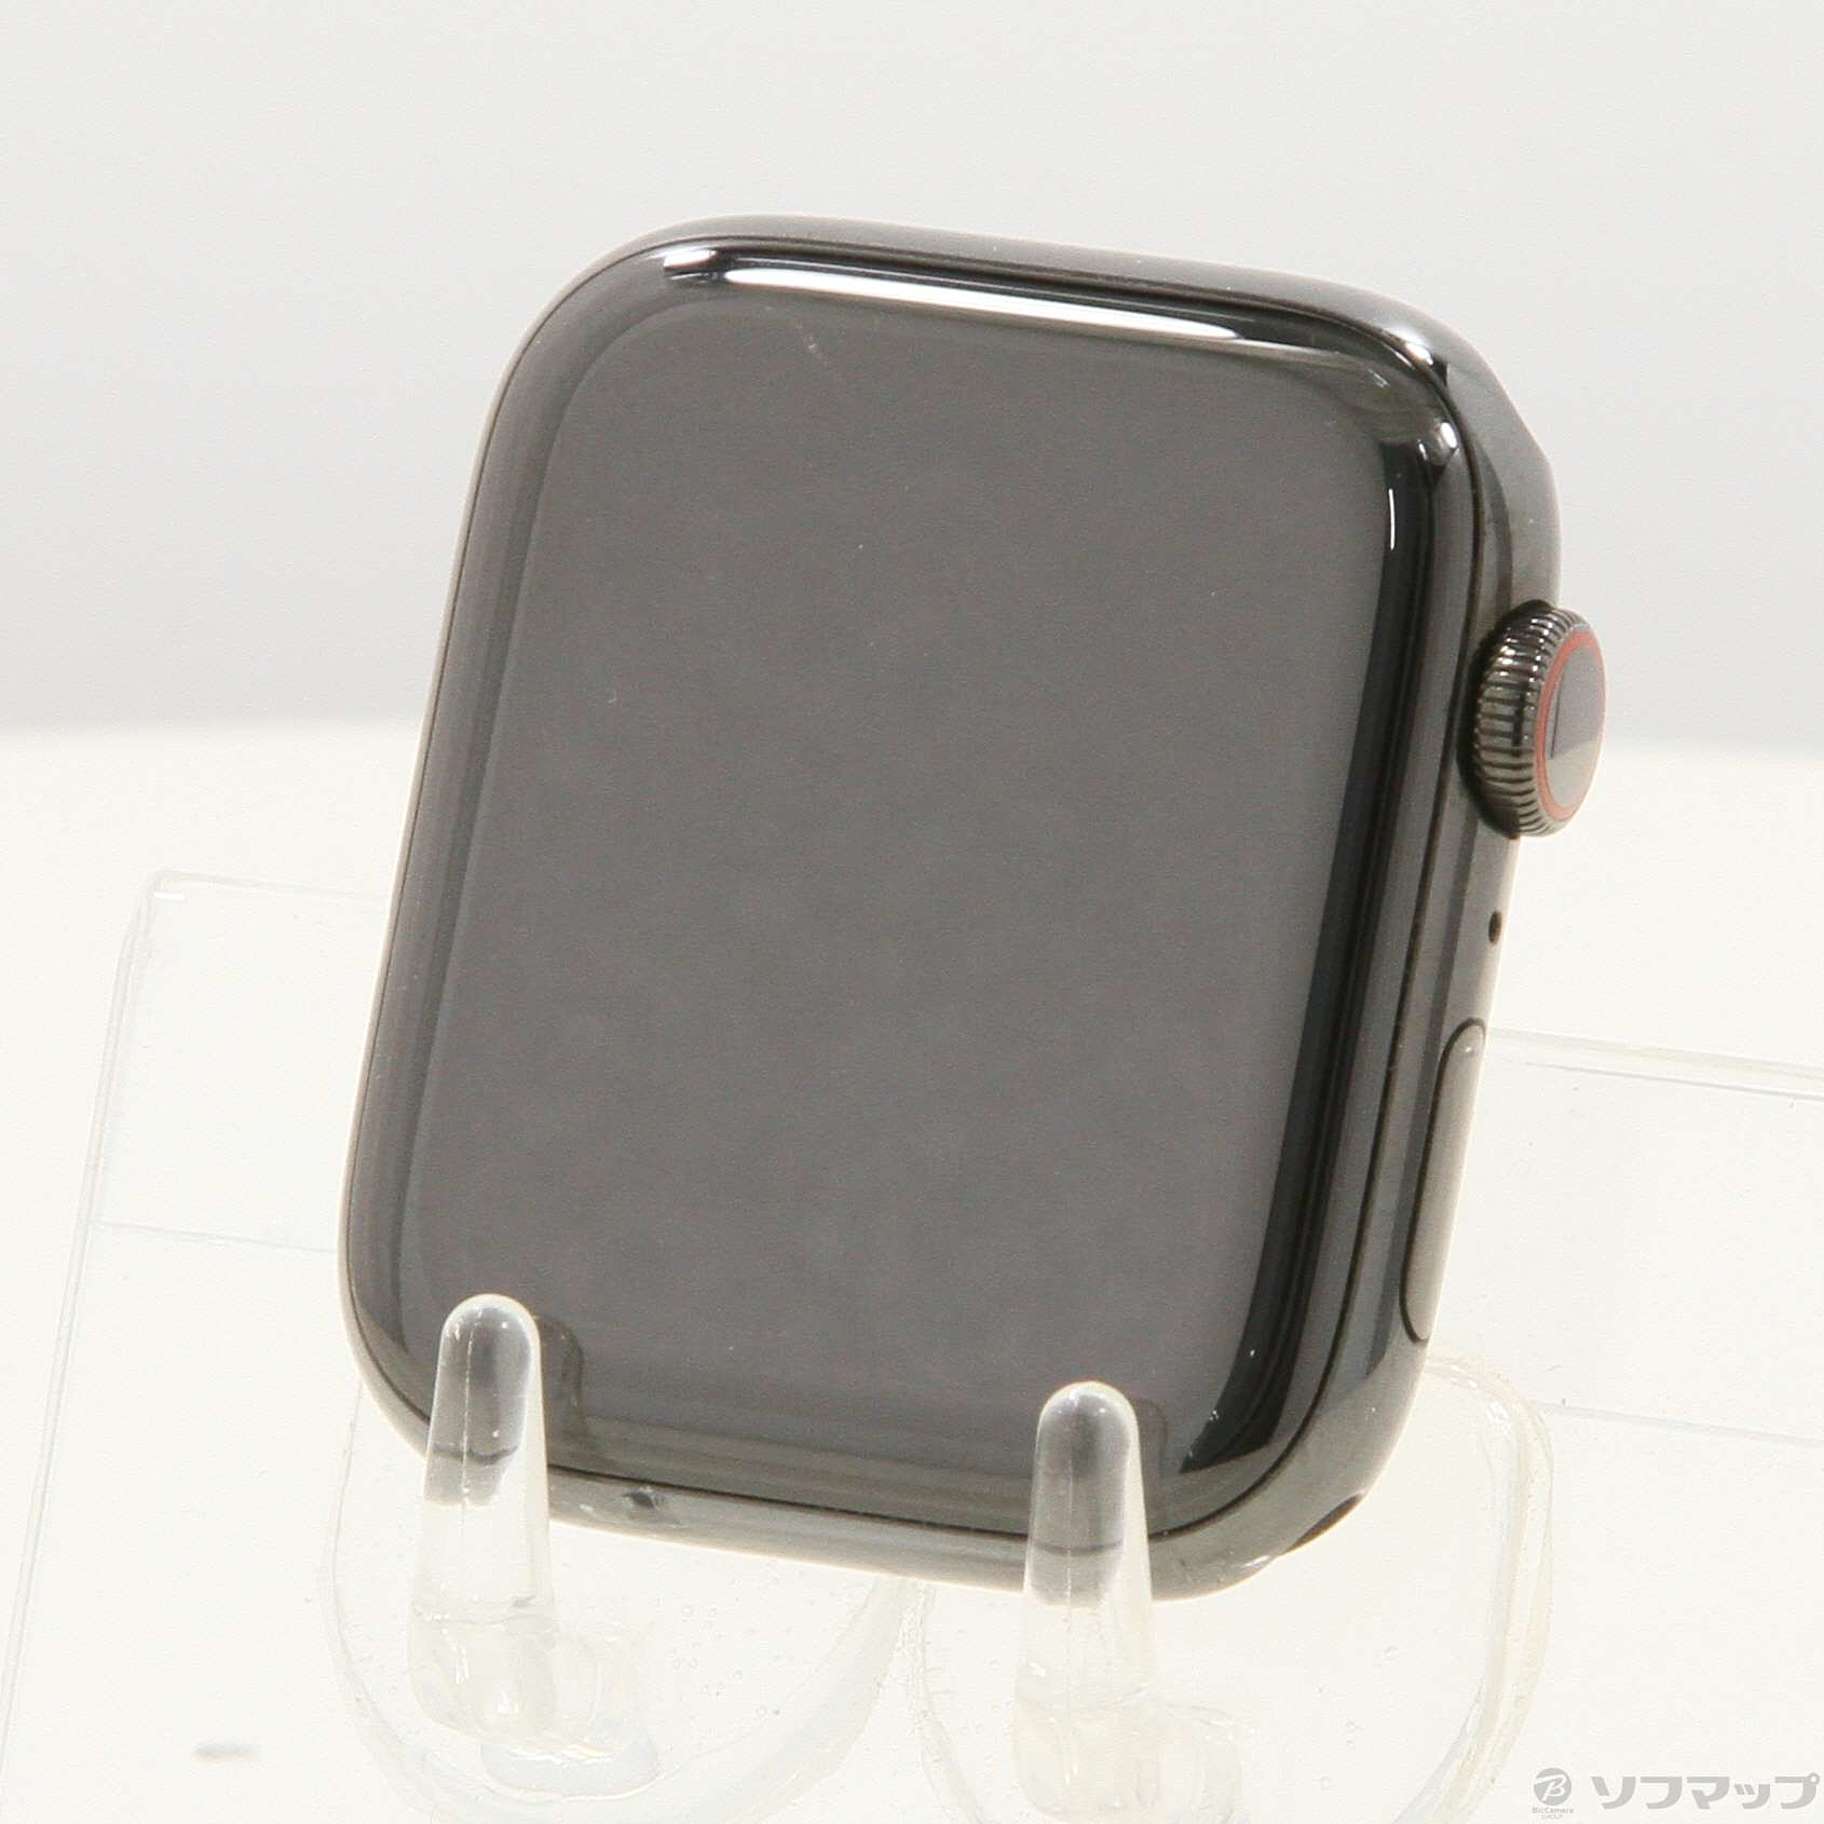 中古】Apple Watch Series 5 GPS + Cellular 44mm スペースブラック